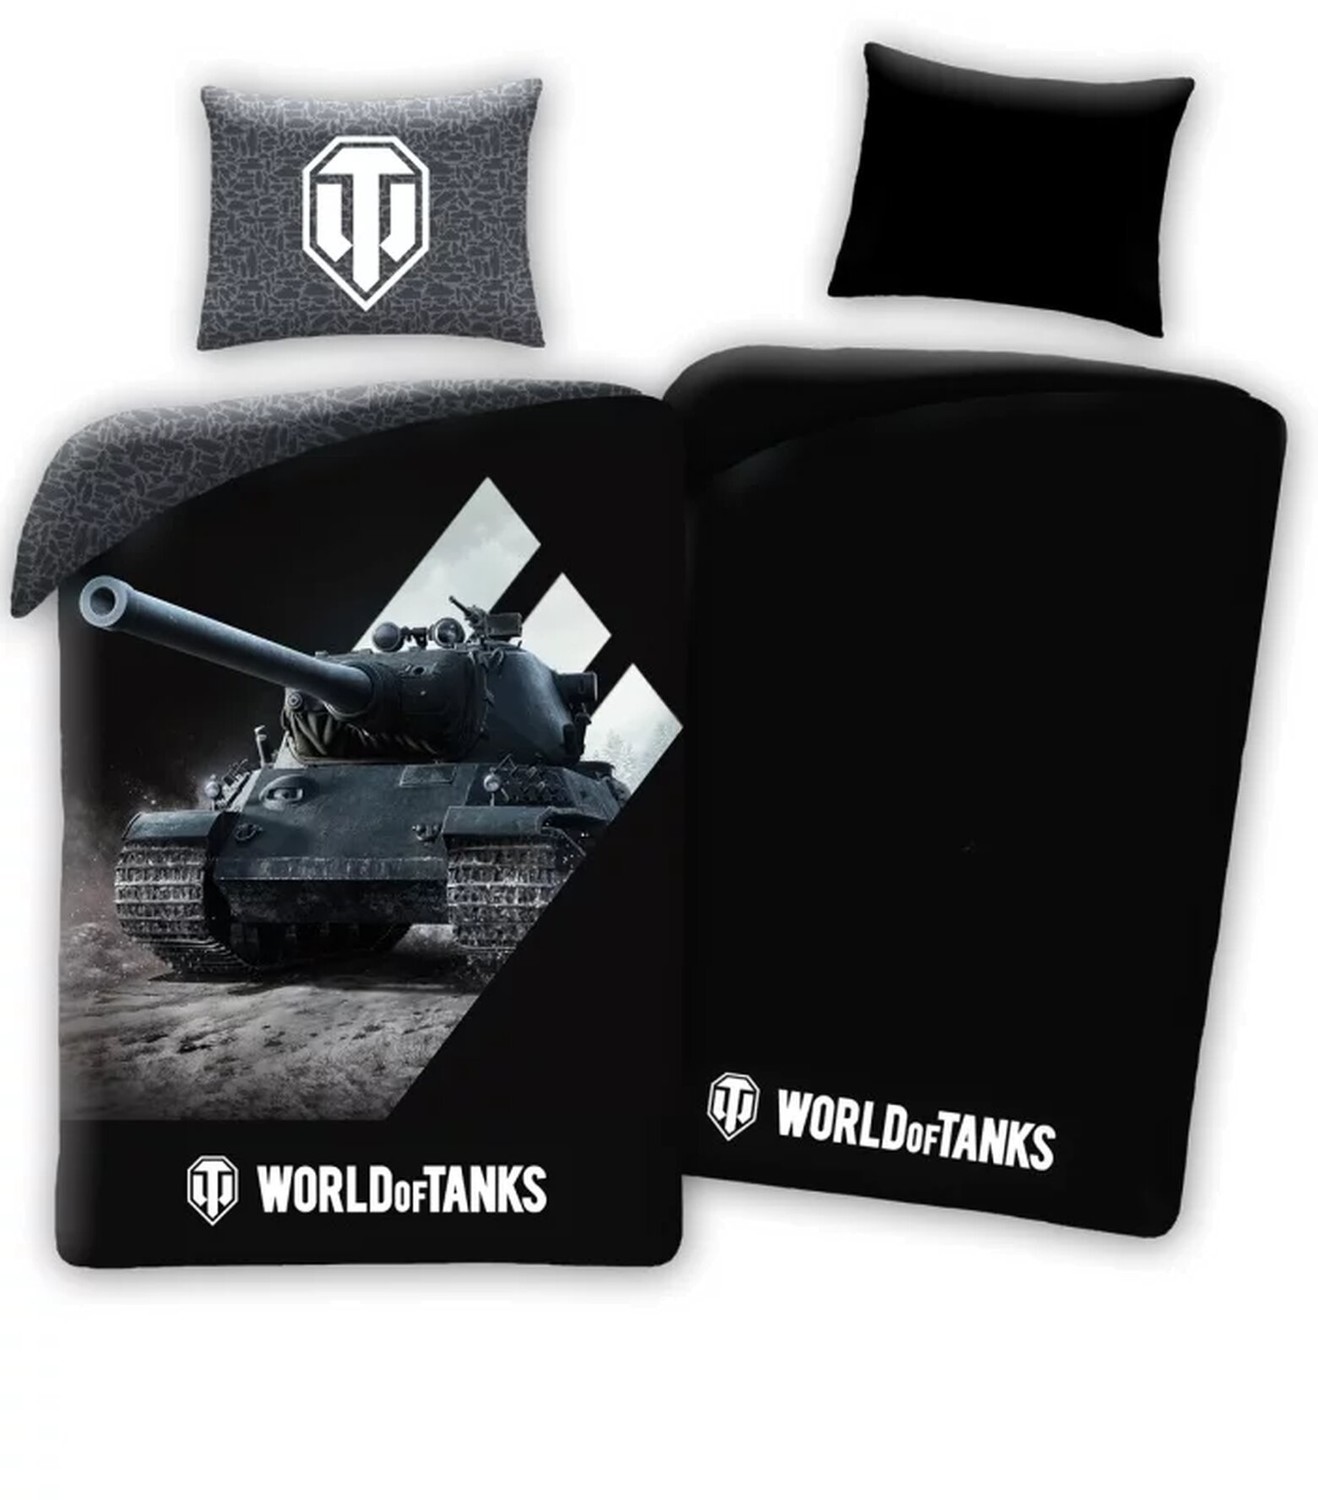 Povlečení World of Tanks - Logo, svítící - 05904209604890